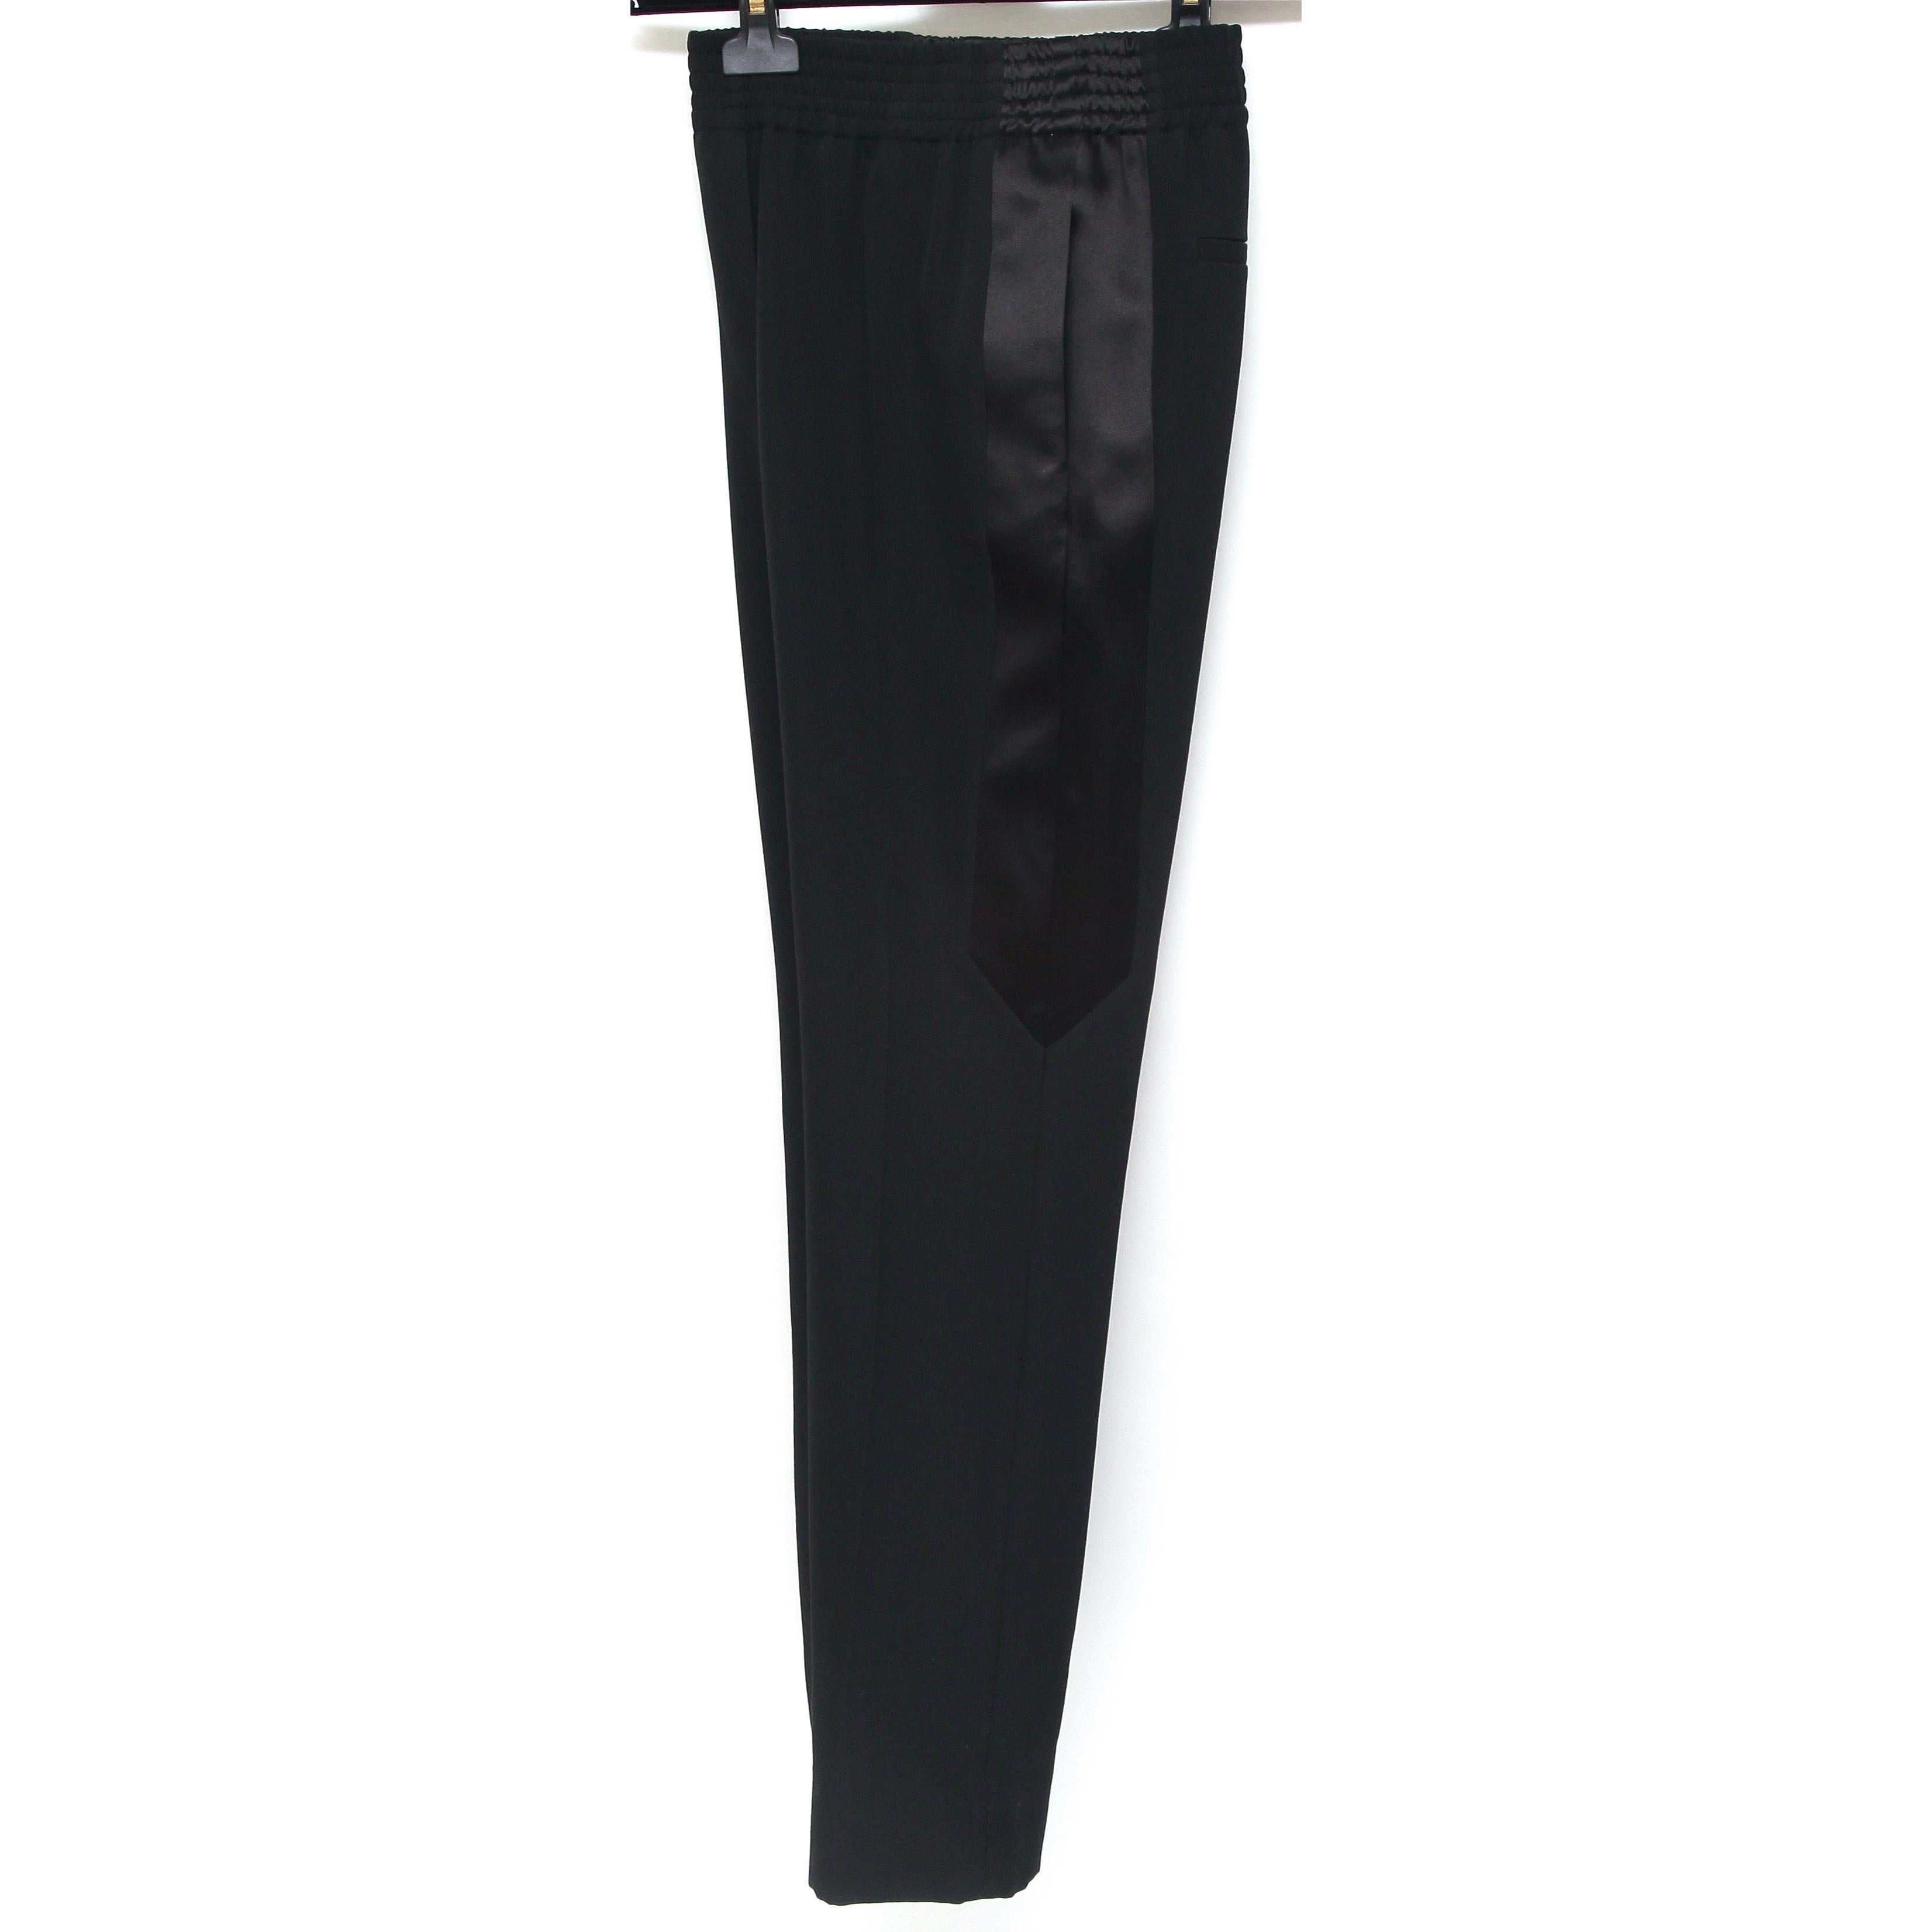 GIVENCHY Pantalon noir en laine à panneaux latéraux avec poches élastiques, Taille 34, Neuf avec étiquette Neuf à Hollywood, FL